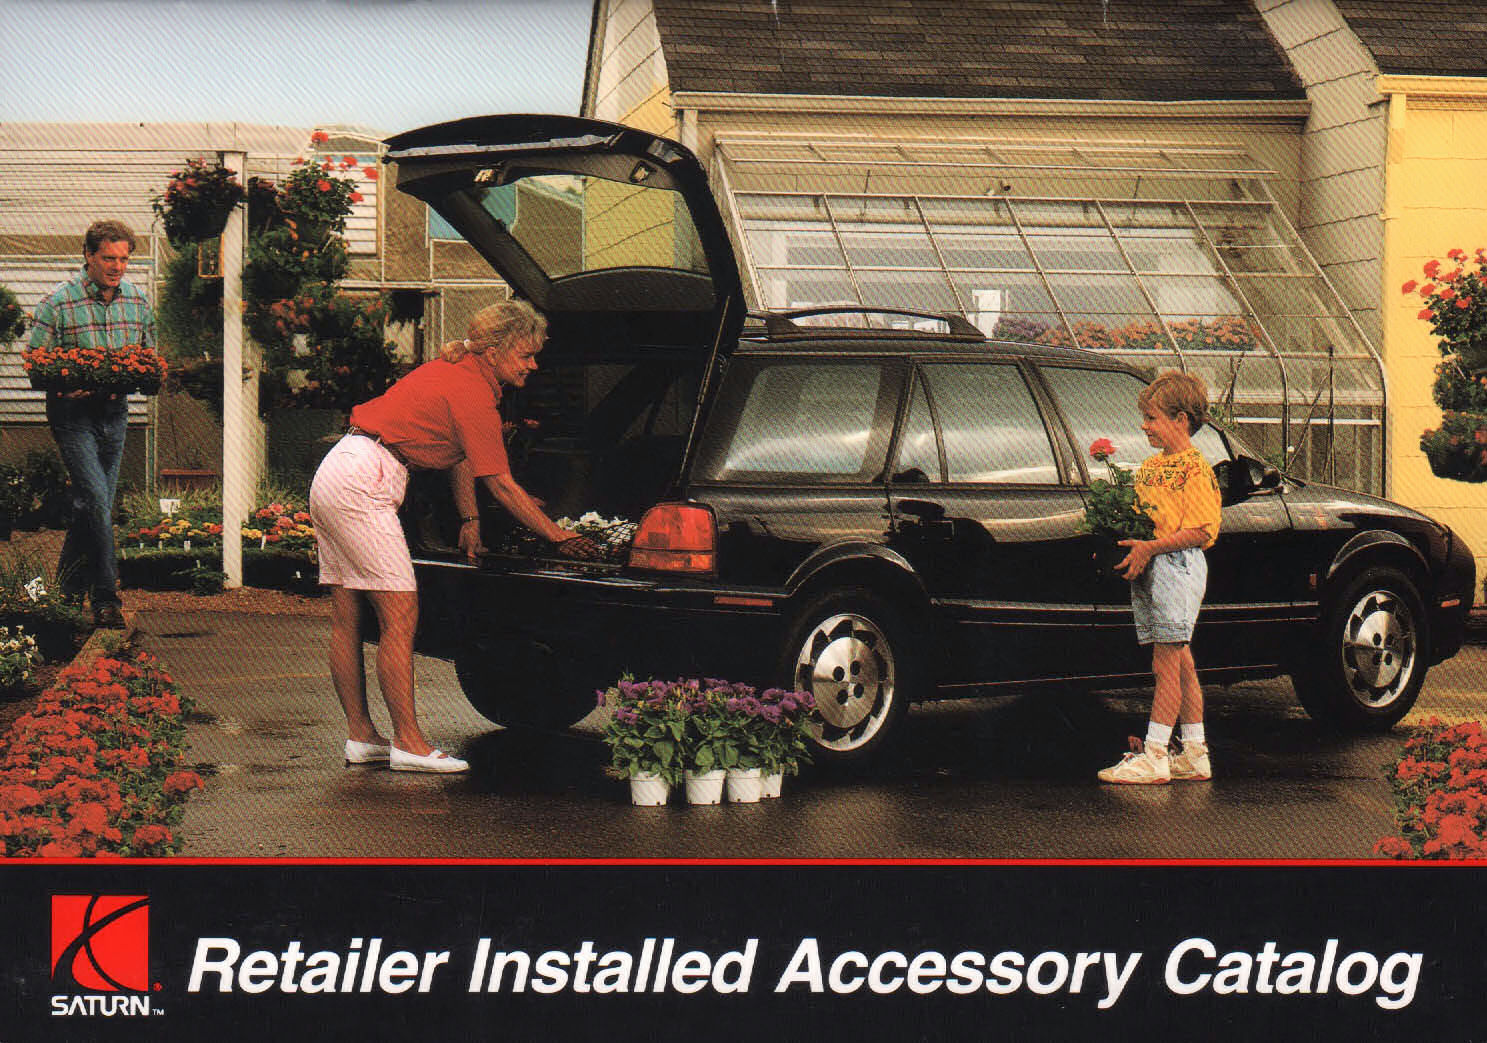 1993_Saturn_Dealer_Accessories-01